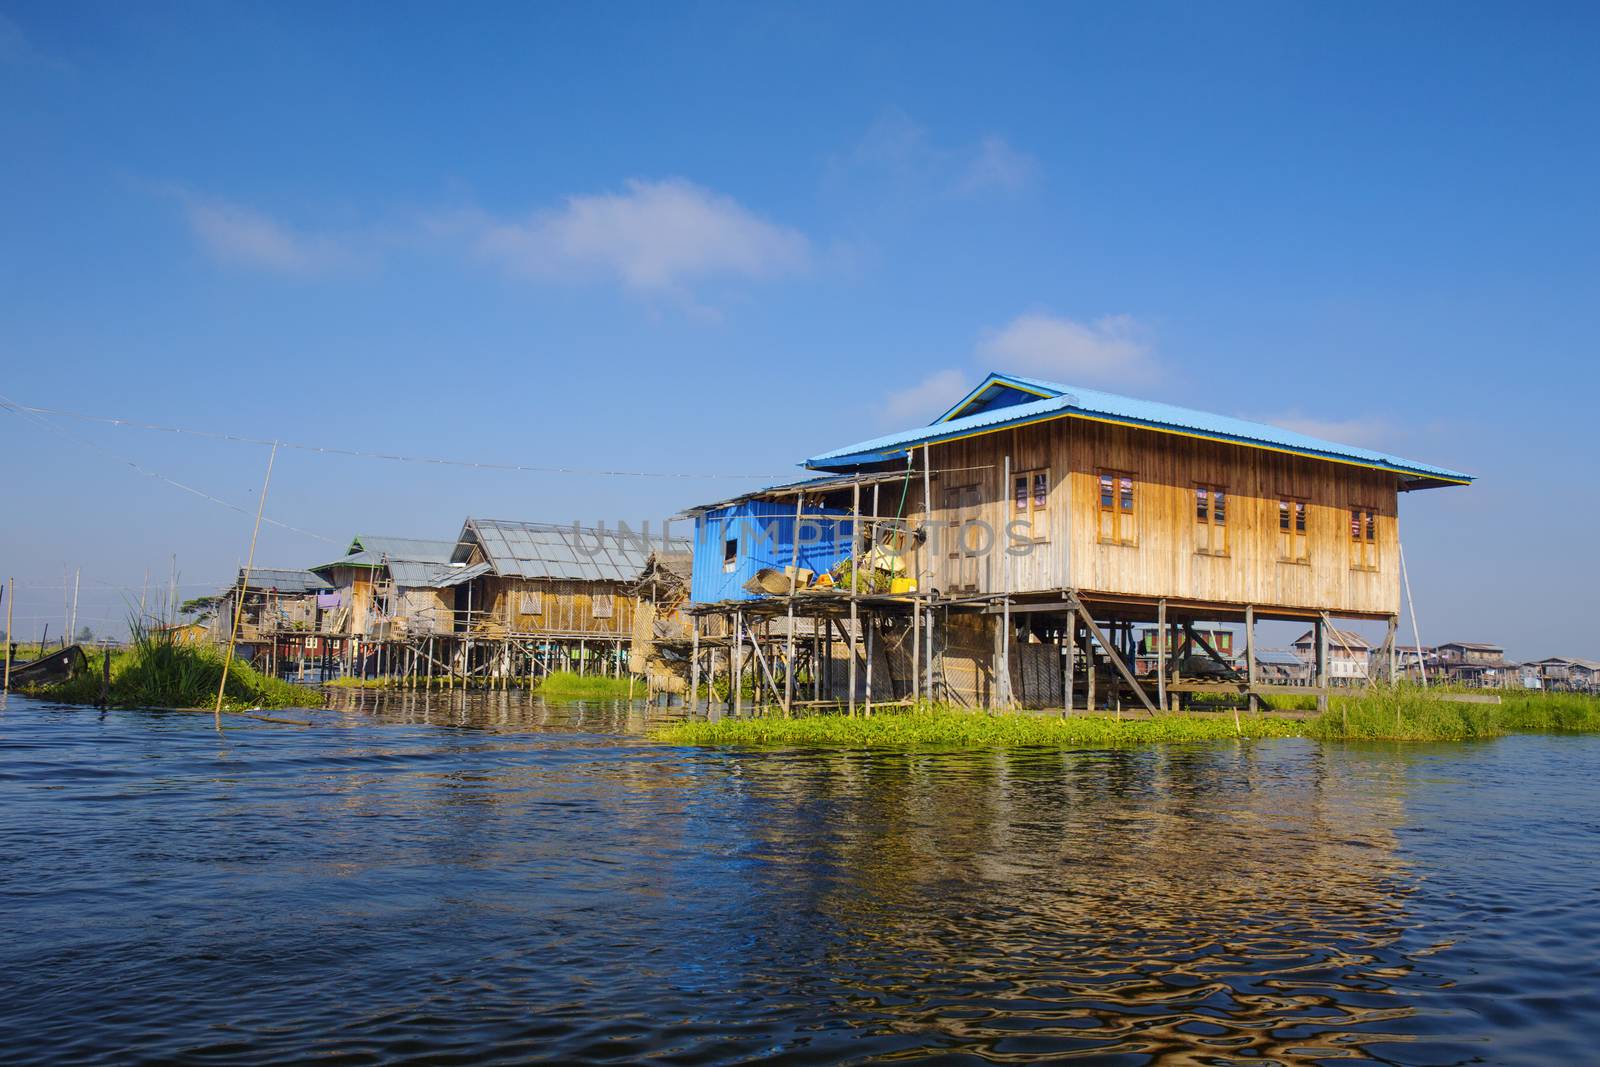 Inle Lake Bago , famous landmark in Myanmar (Burma)